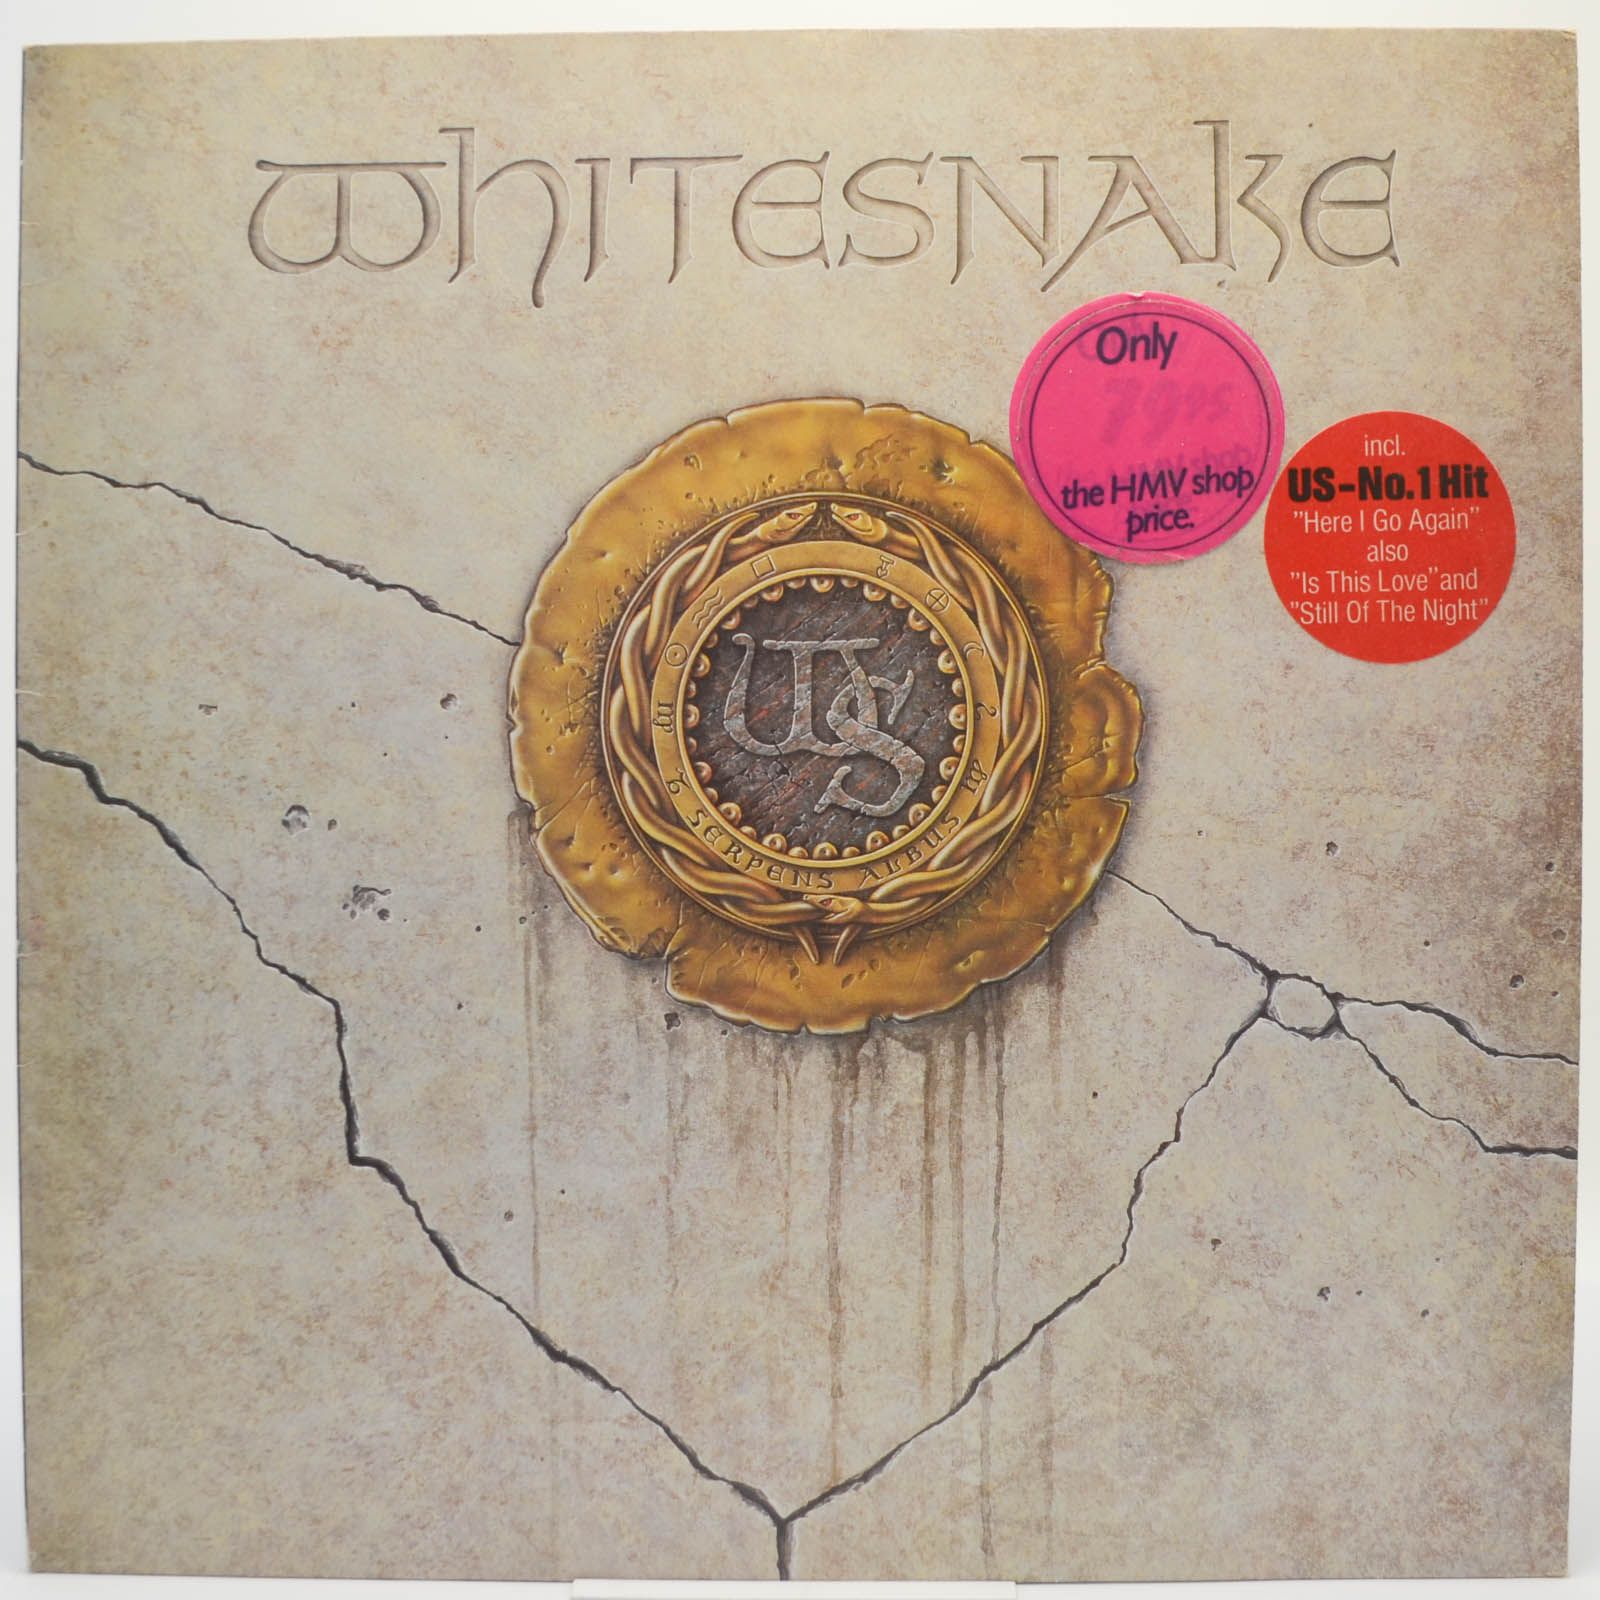 Whitesnake — 1987, 1987